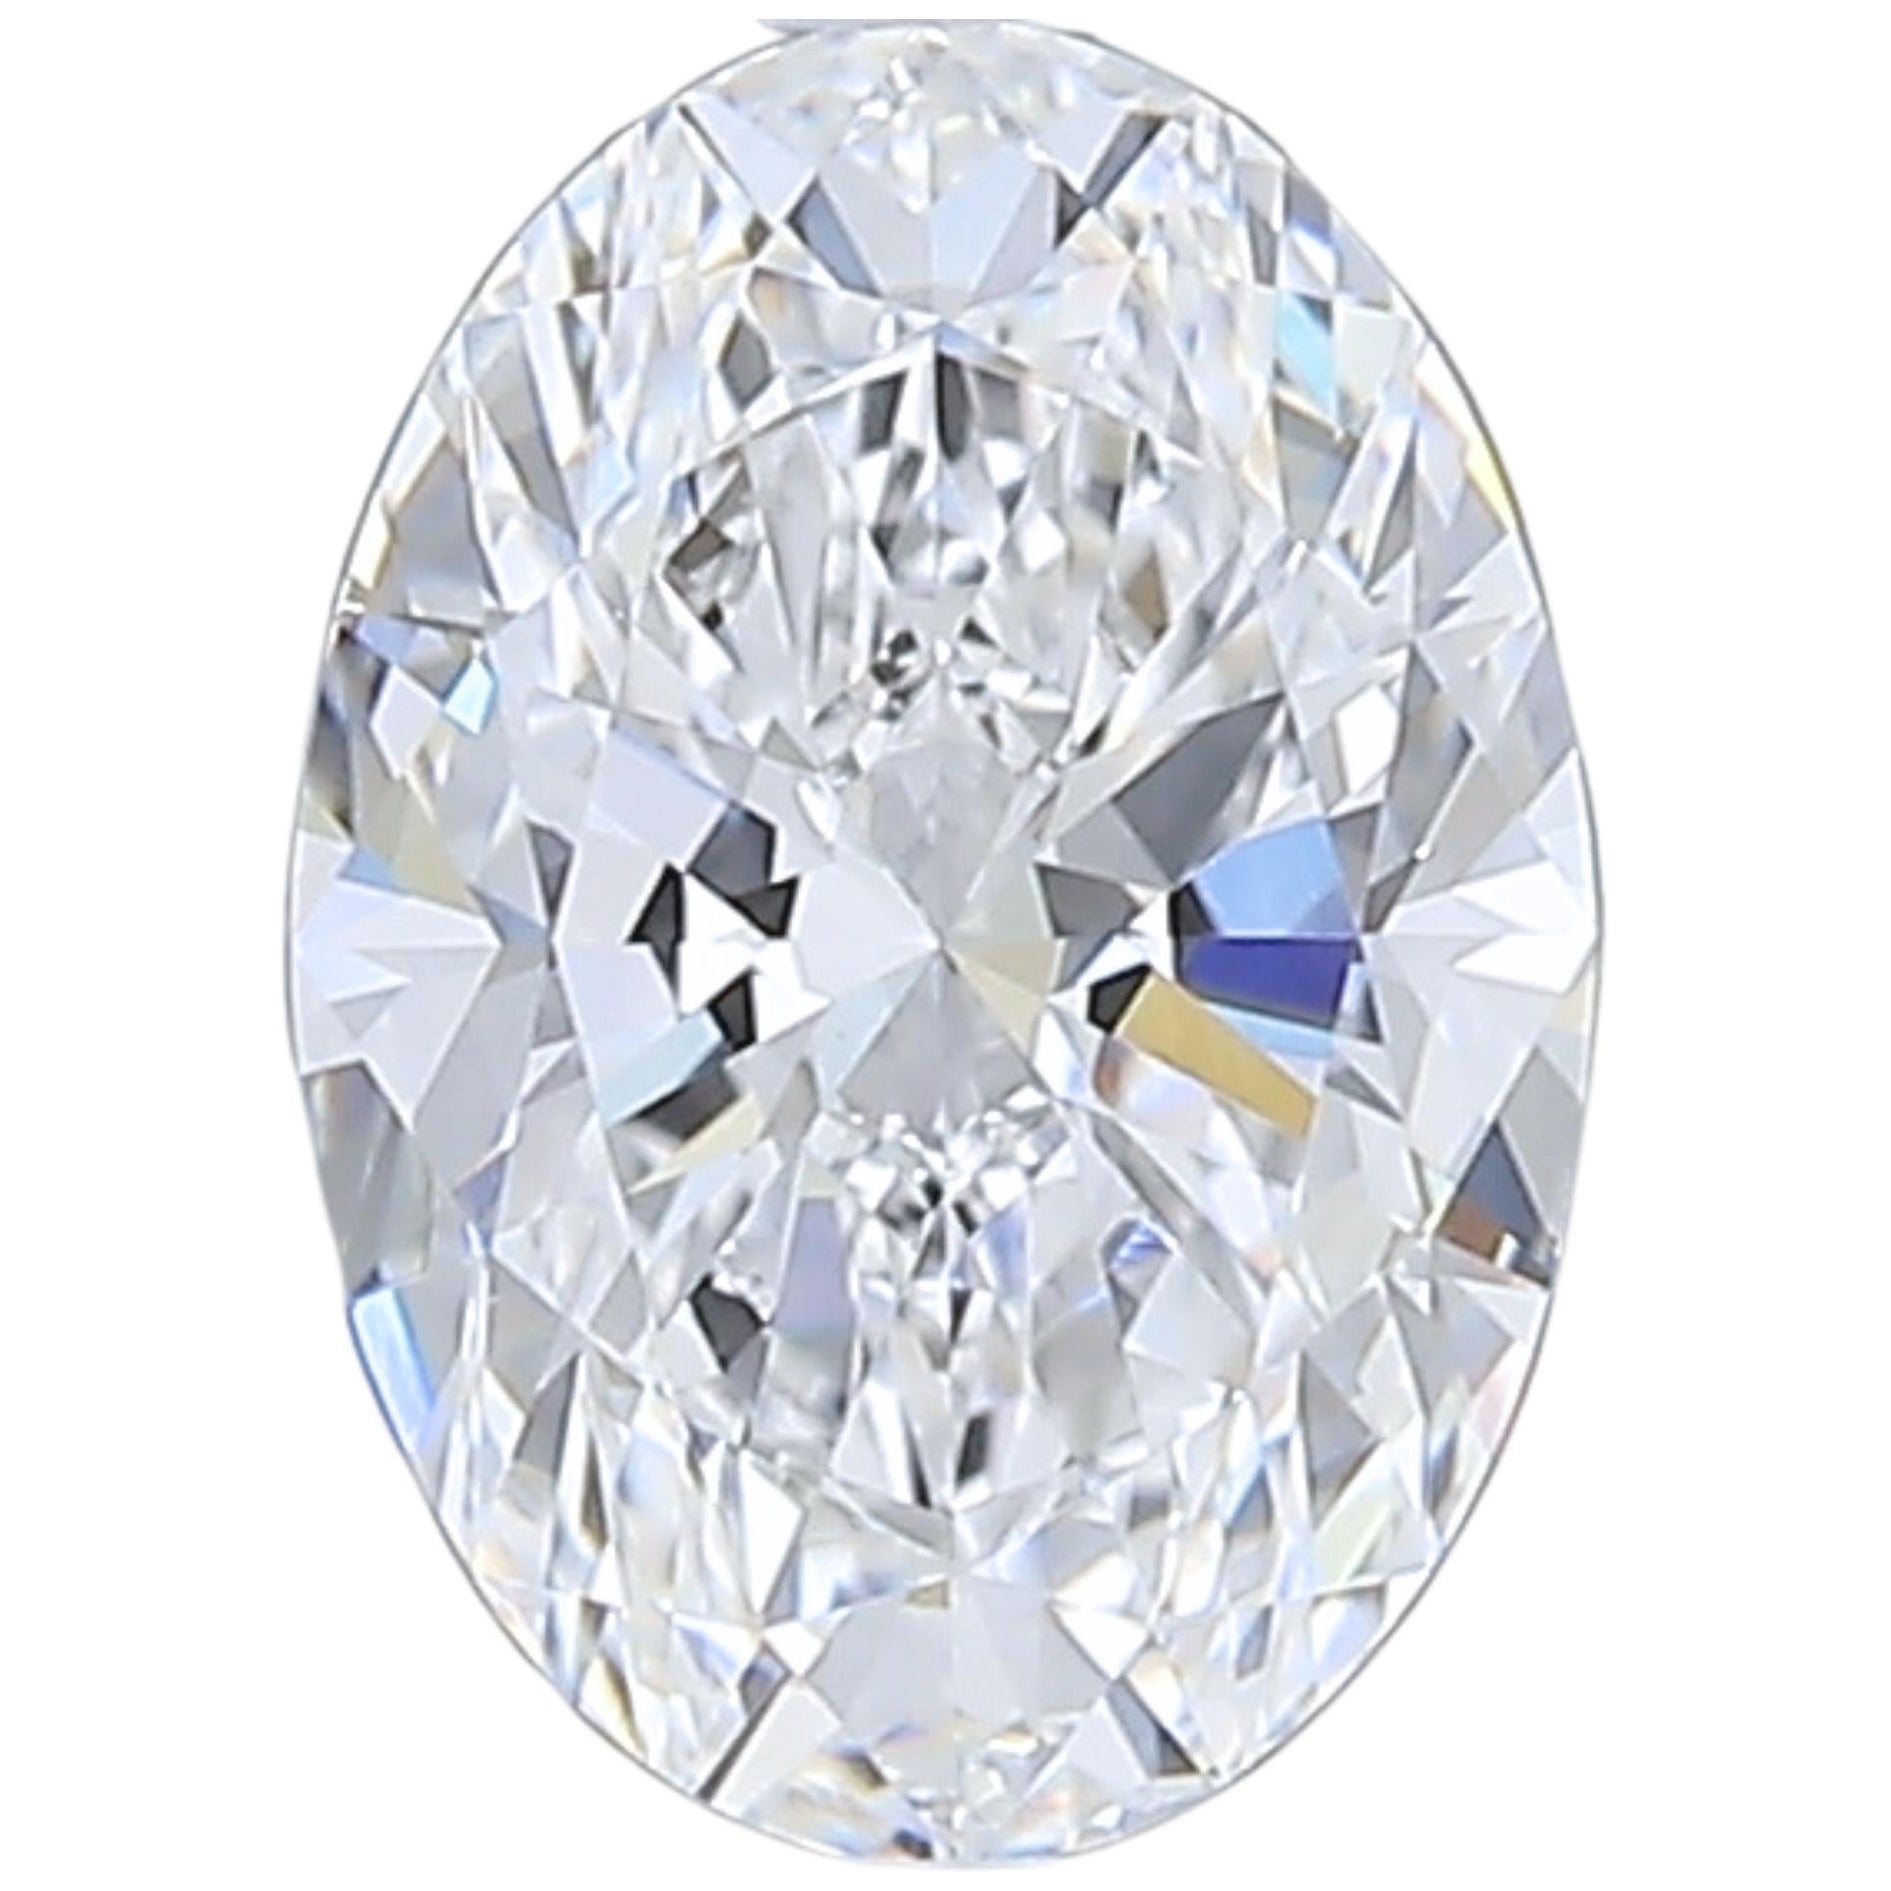 Luxurious 1.02 carat Oval Cut Brilliant Diamond For Sale